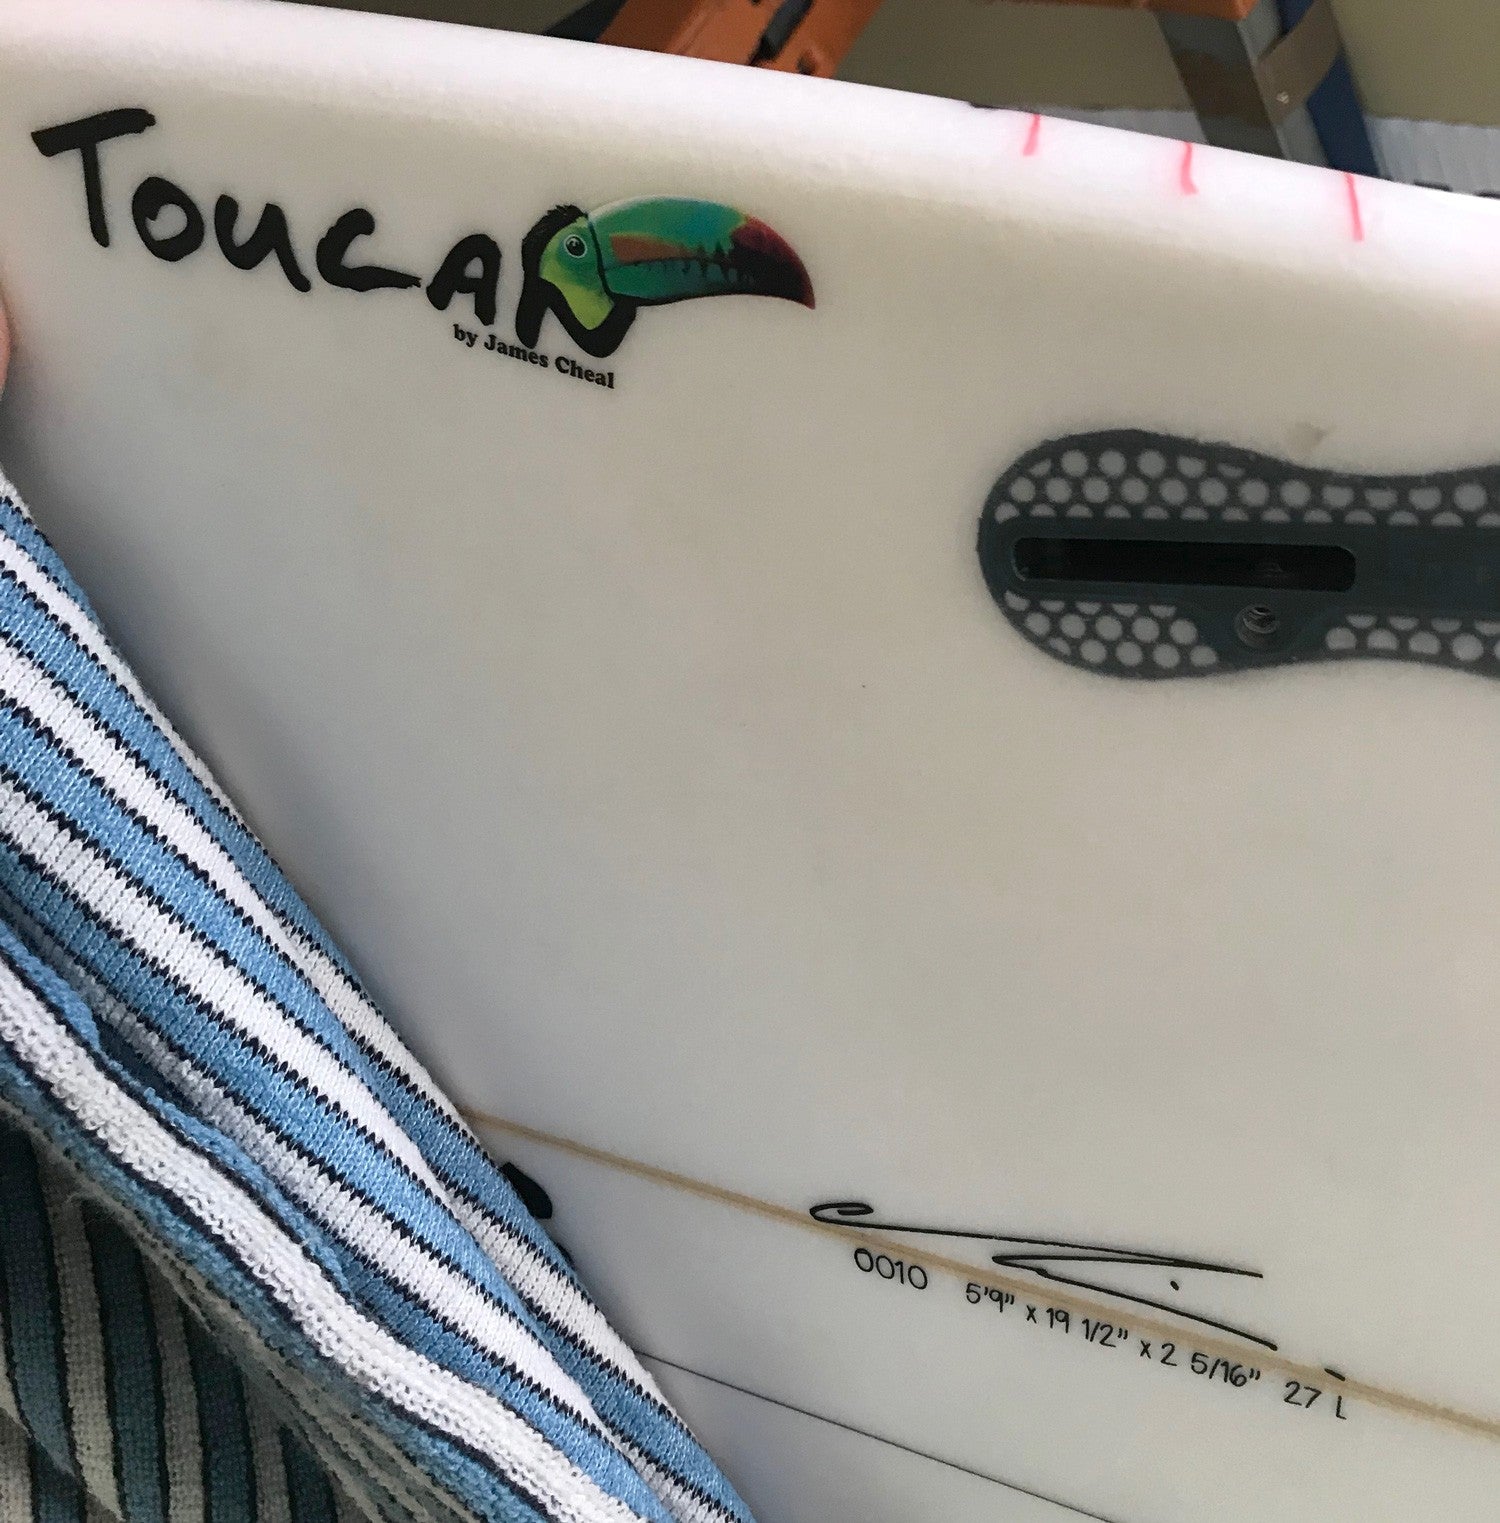 CHILLI Surfboard - Toucan 5'9' Epoxy - FCS II